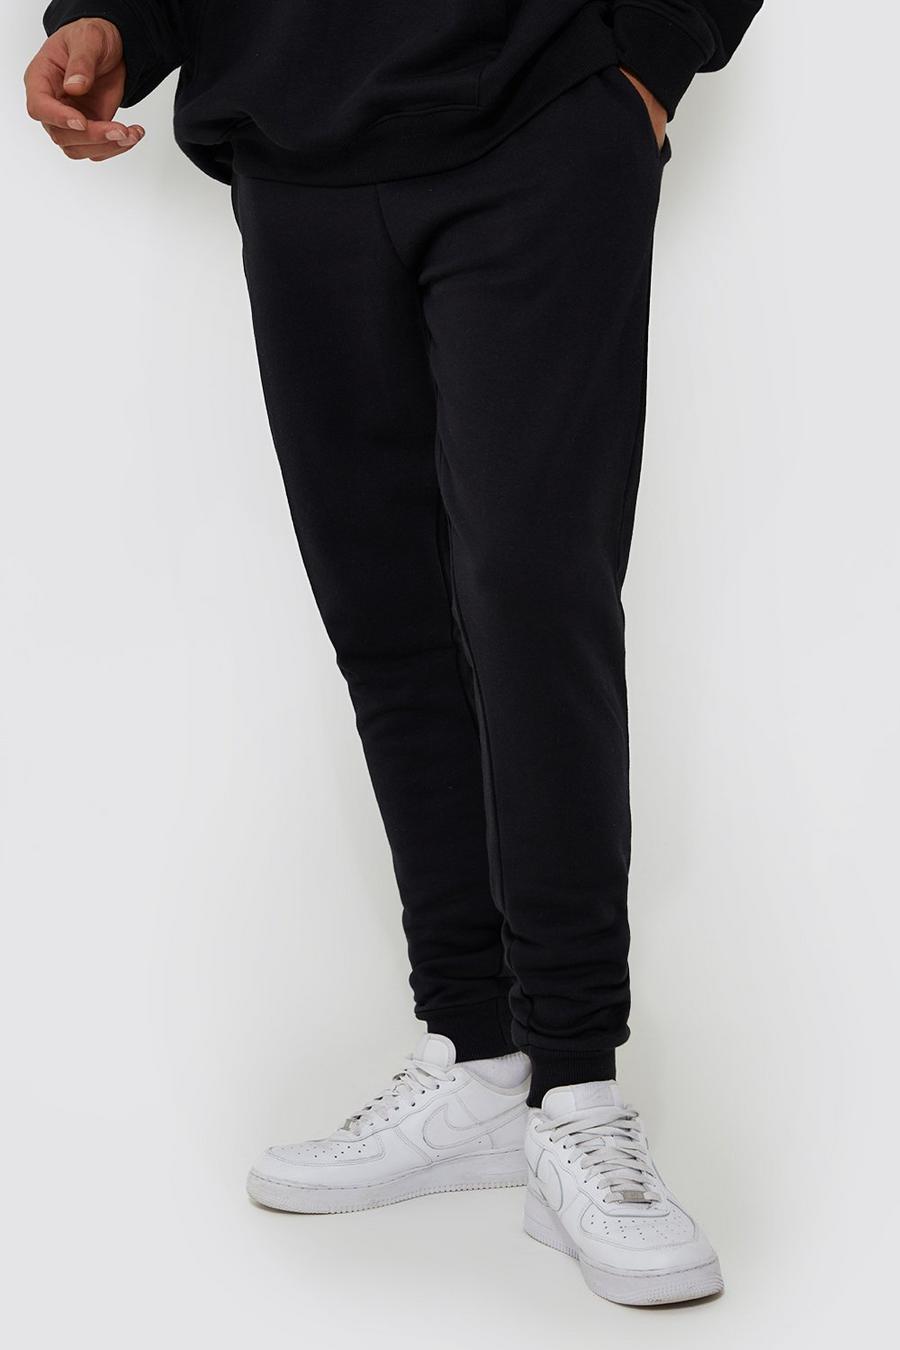 Pantalón deportivo Tall básico pitillo con algodón ecológico, Black